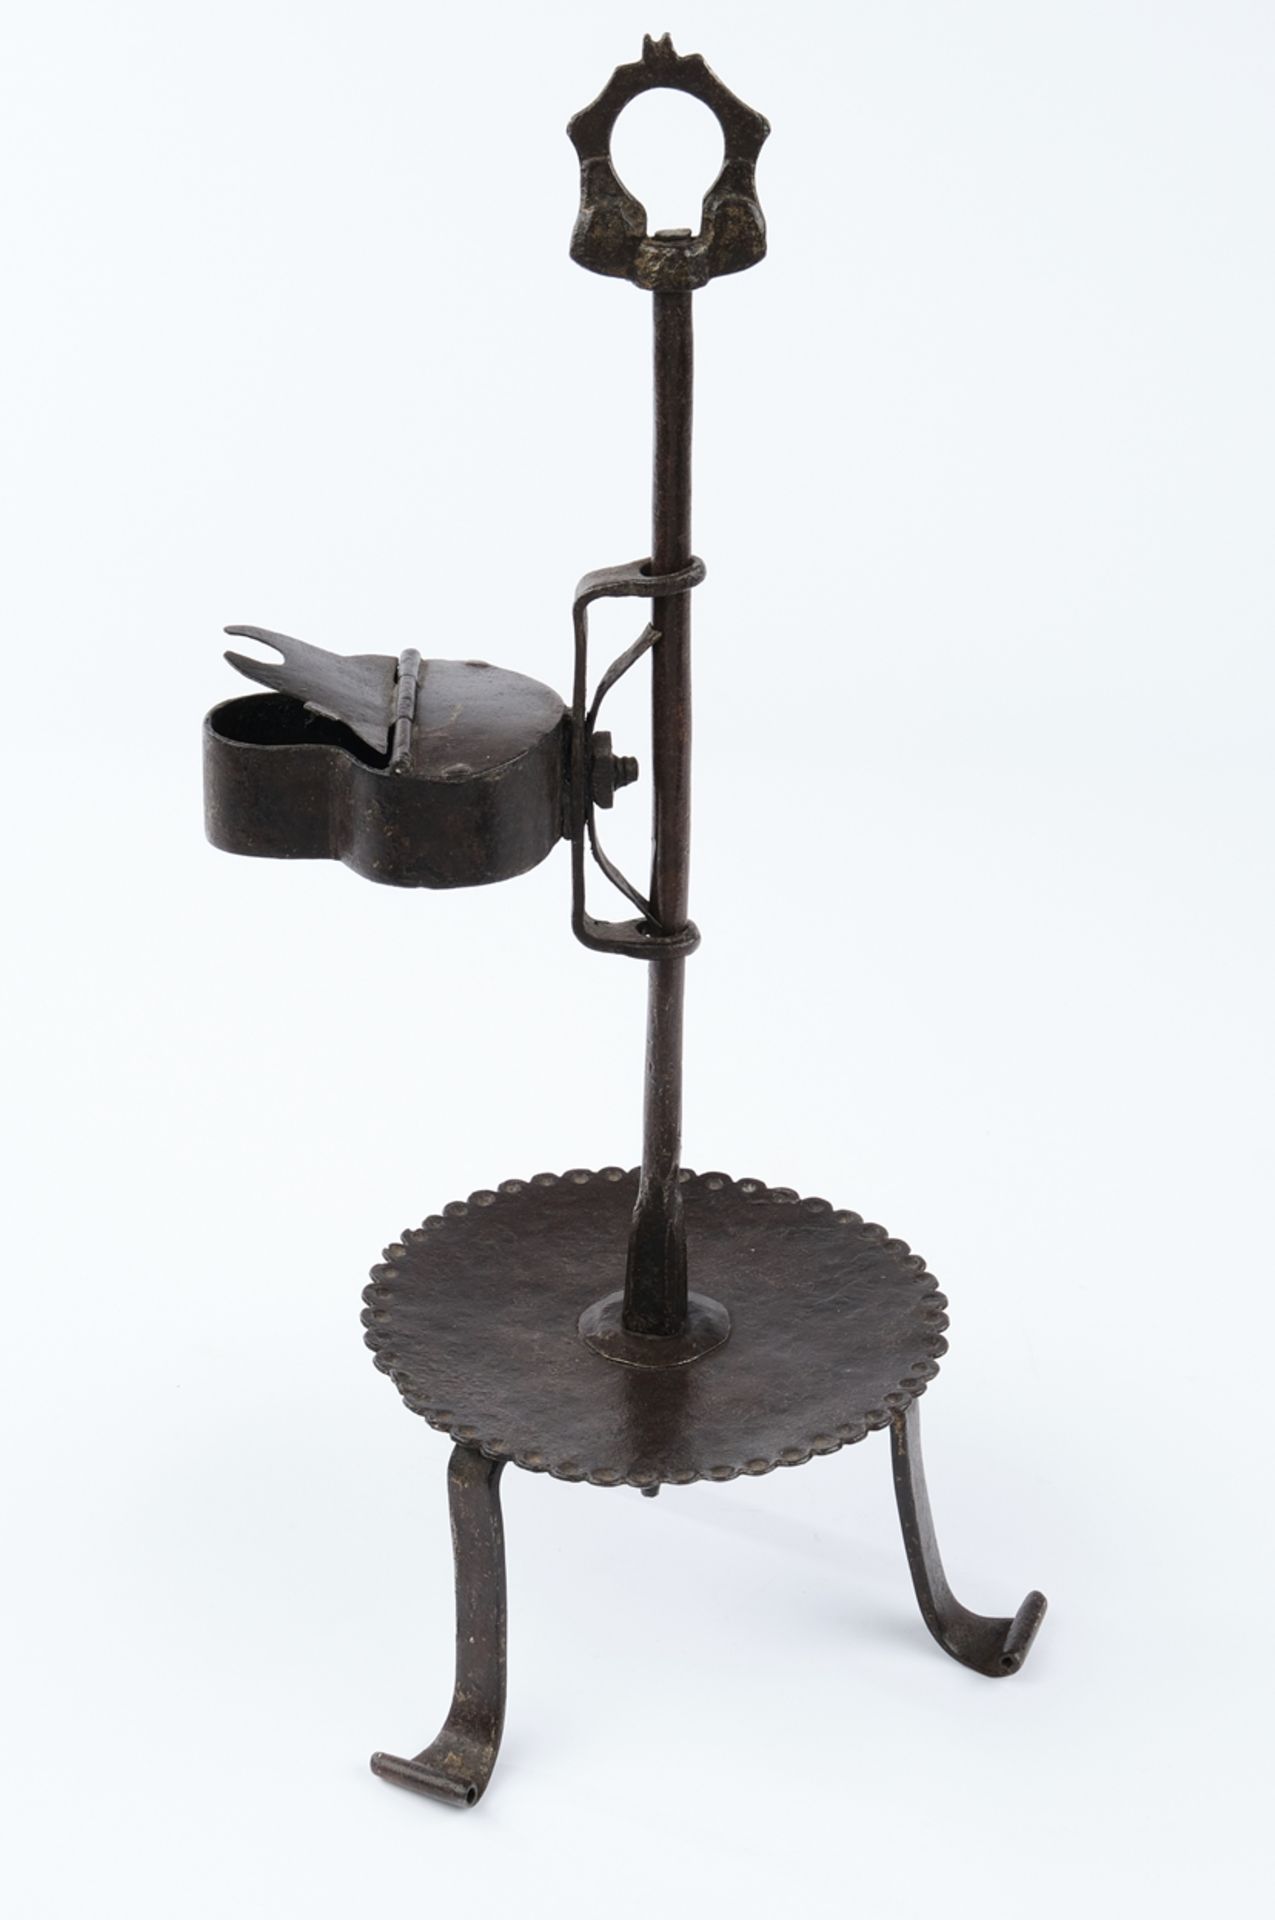 Tisch-Öllampe, um 1600, Eisen, Stab mit Tragegriff und verstellbarer Lampe auf Dreifuß, 36.5 cm hoc